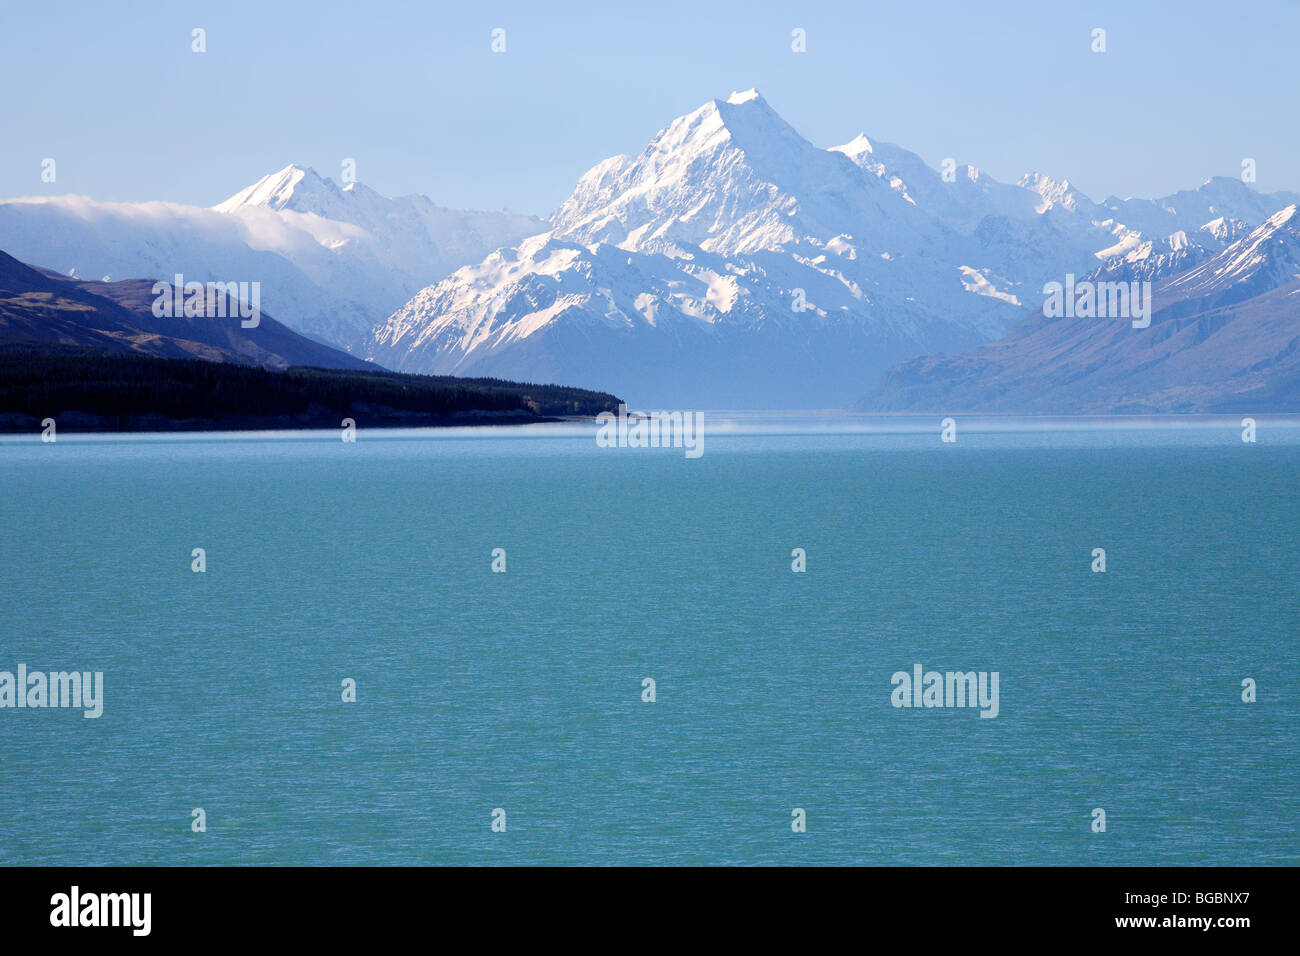 Mount Cook Aoraki view from Lake Pukaki Stock Photo